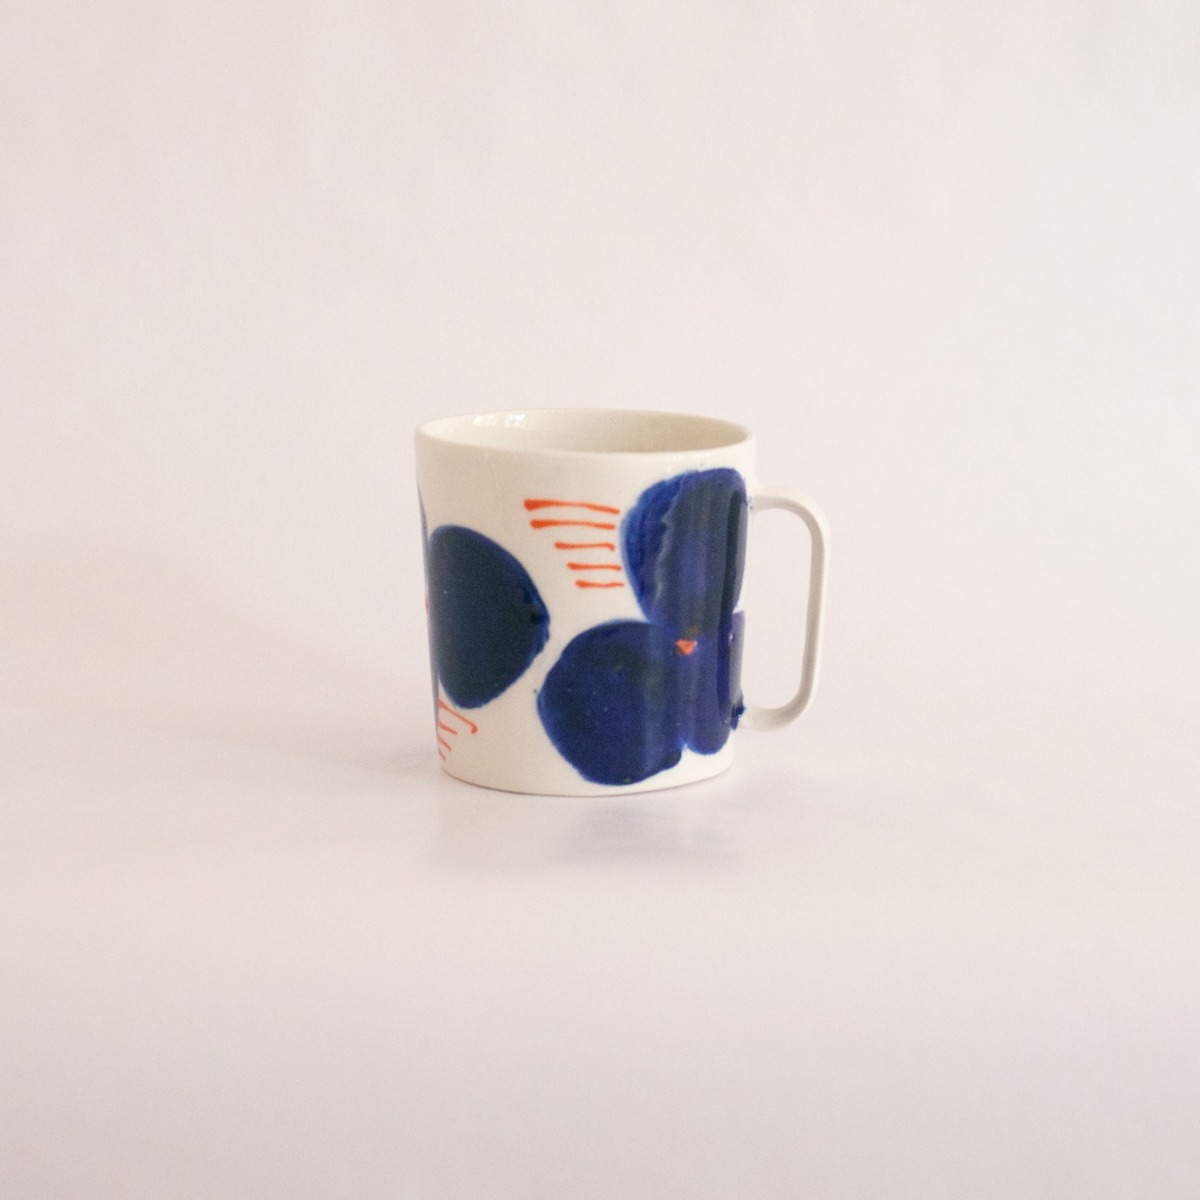 Kaffekopp 25 ml blom blå/orange streckproduktzoombild #3